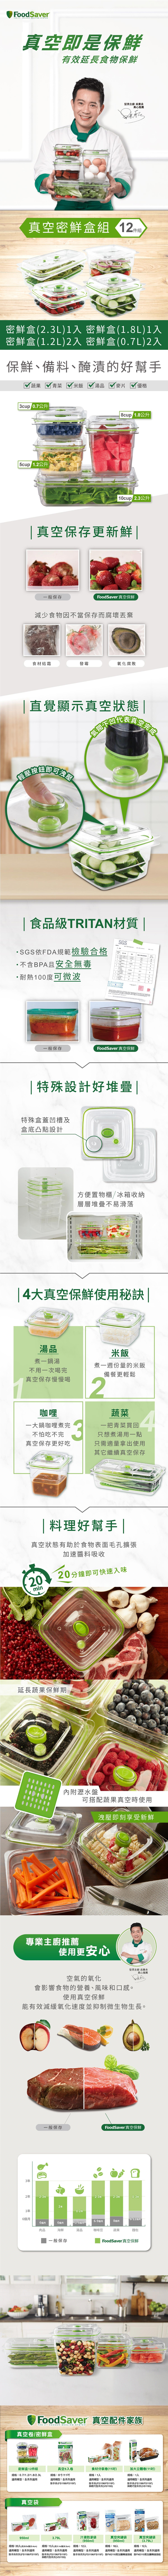 Foodsaver 真空密鮮盒 12件組，可保存湯汁類等液體食材或料理，需搭配FoodSaver真空機。